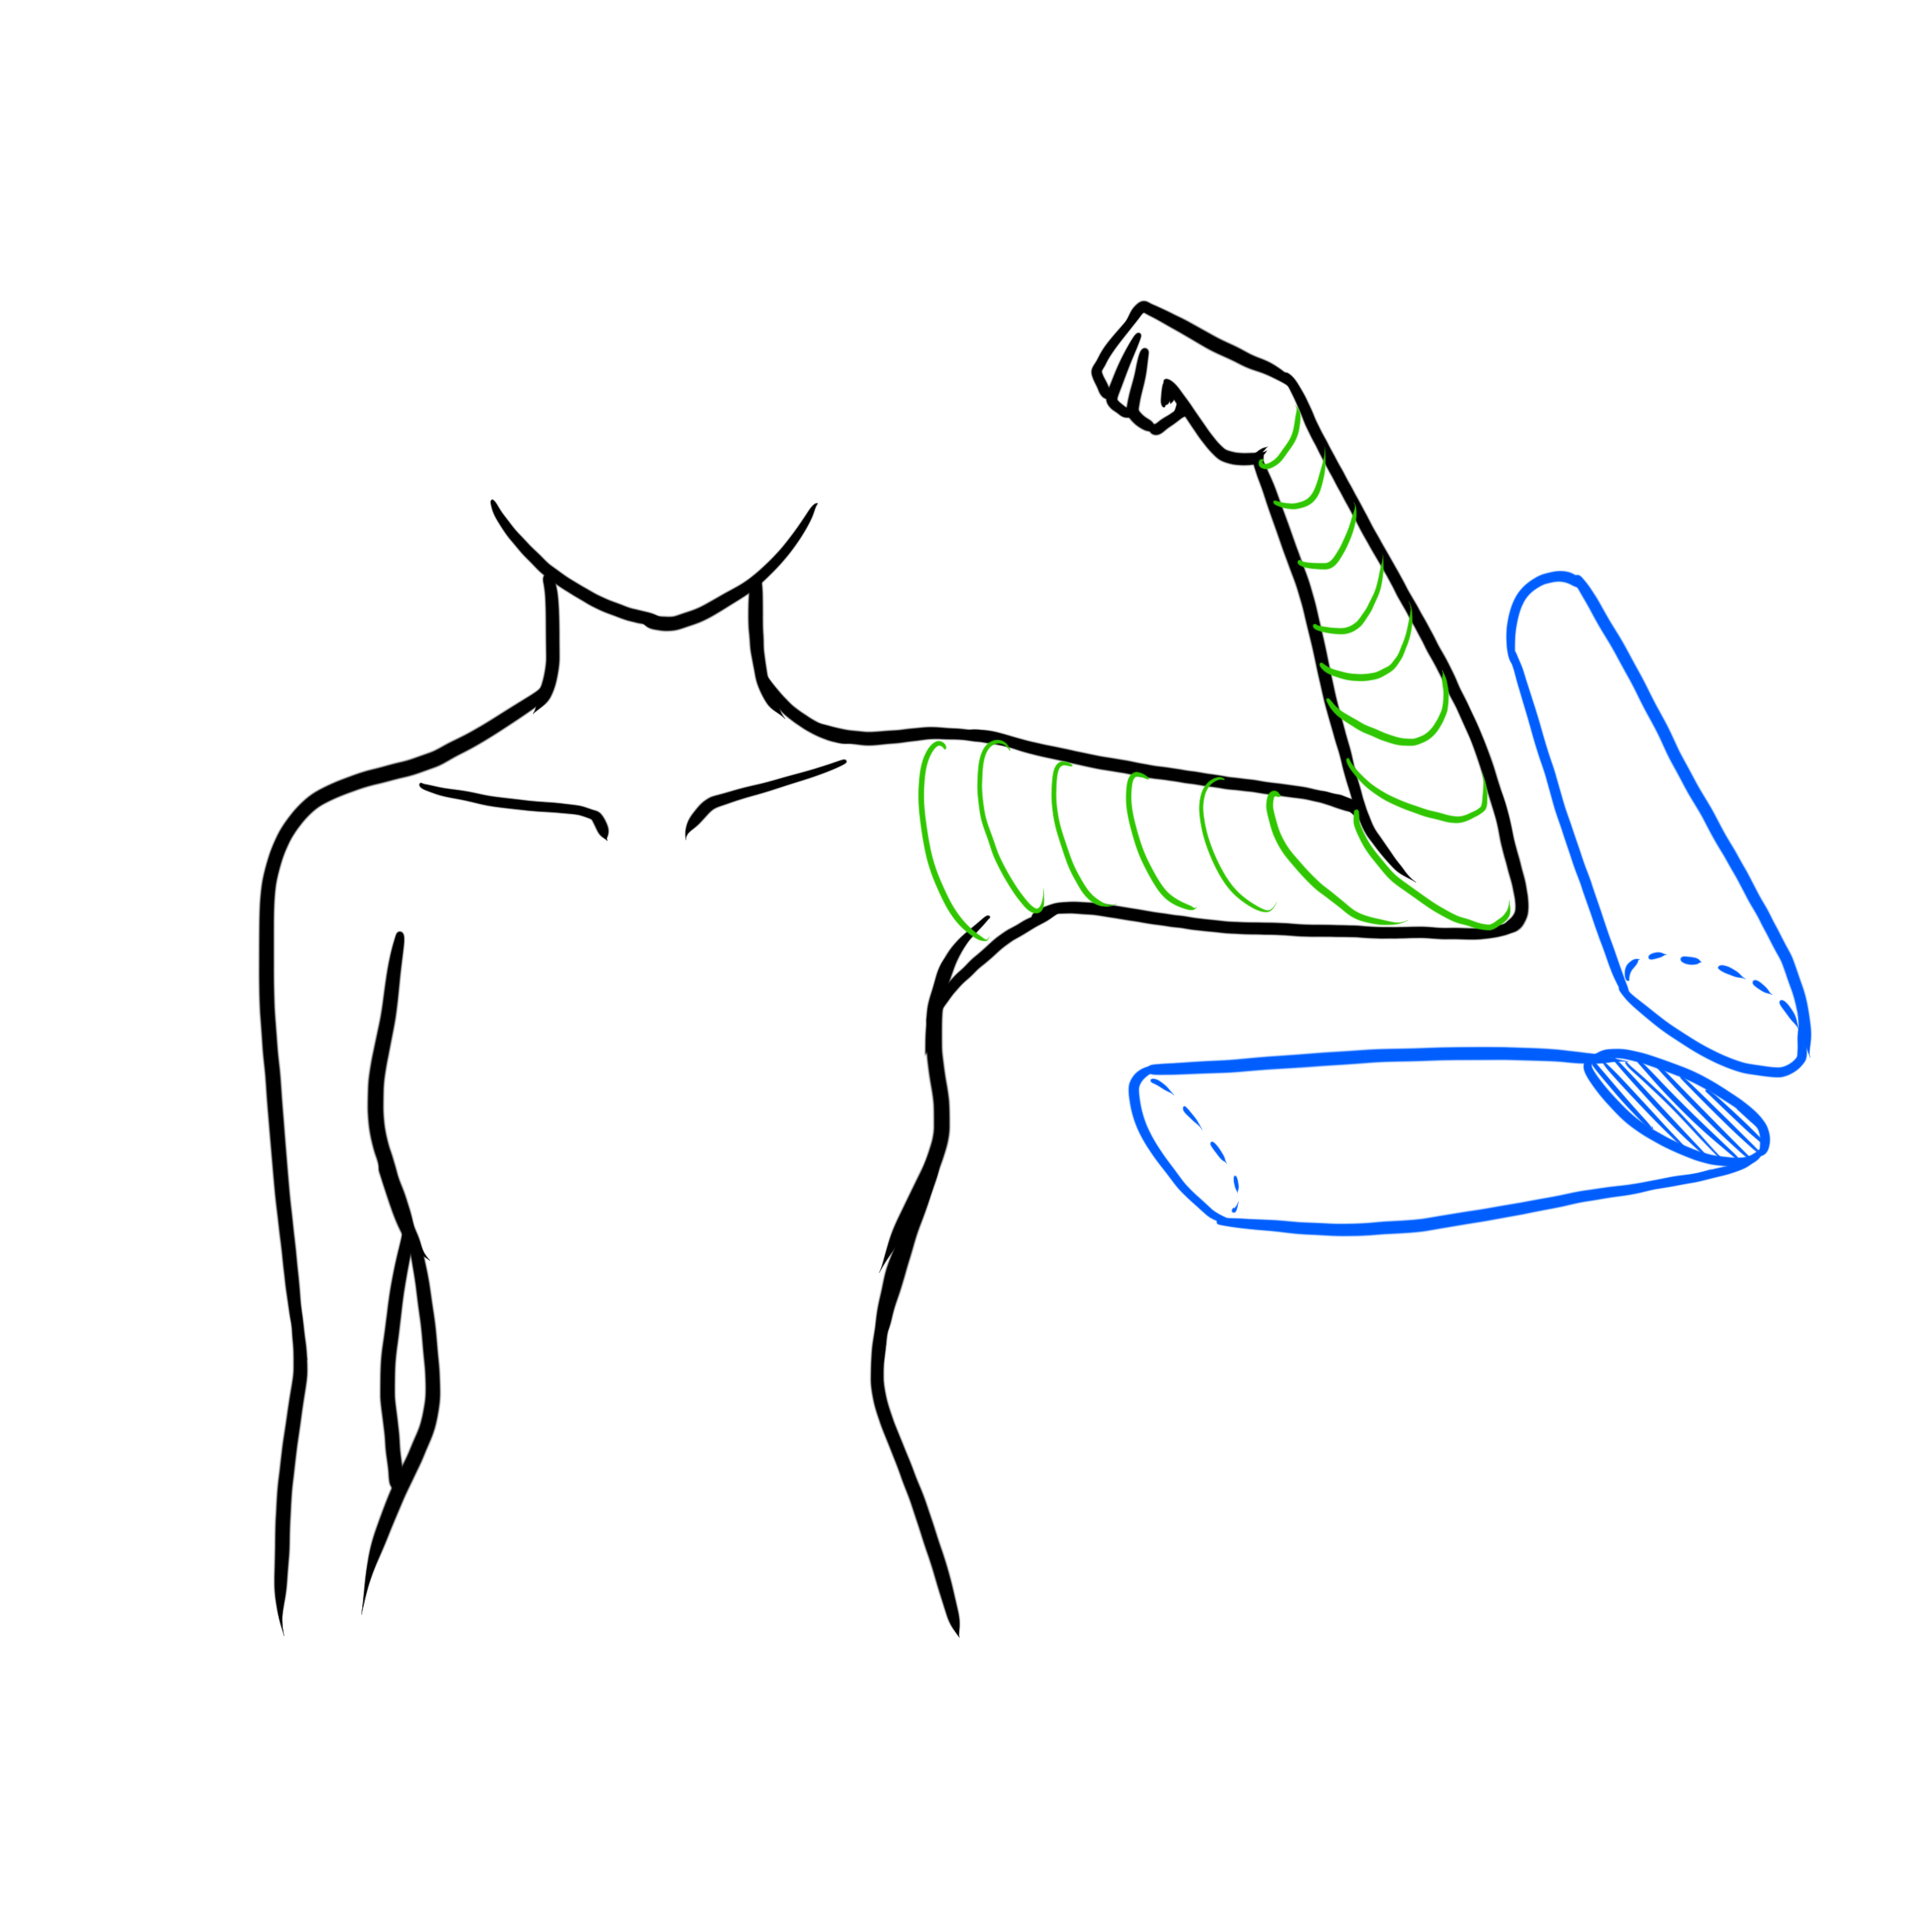 腕の描き方 意外と簡単 腕の描き方を徹底解説 株式会社esolab